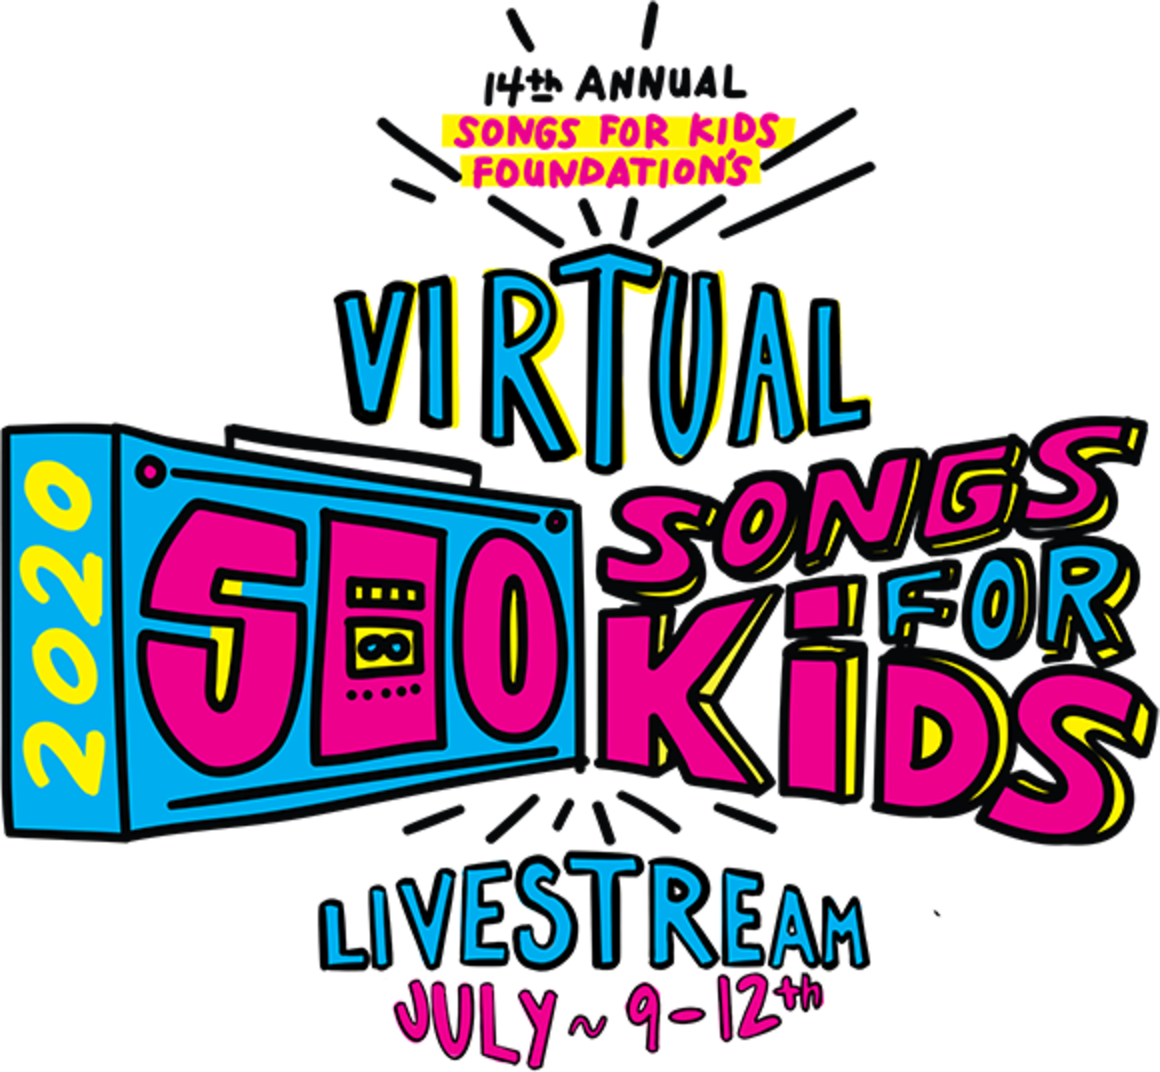 500 Songs for Kids Logo